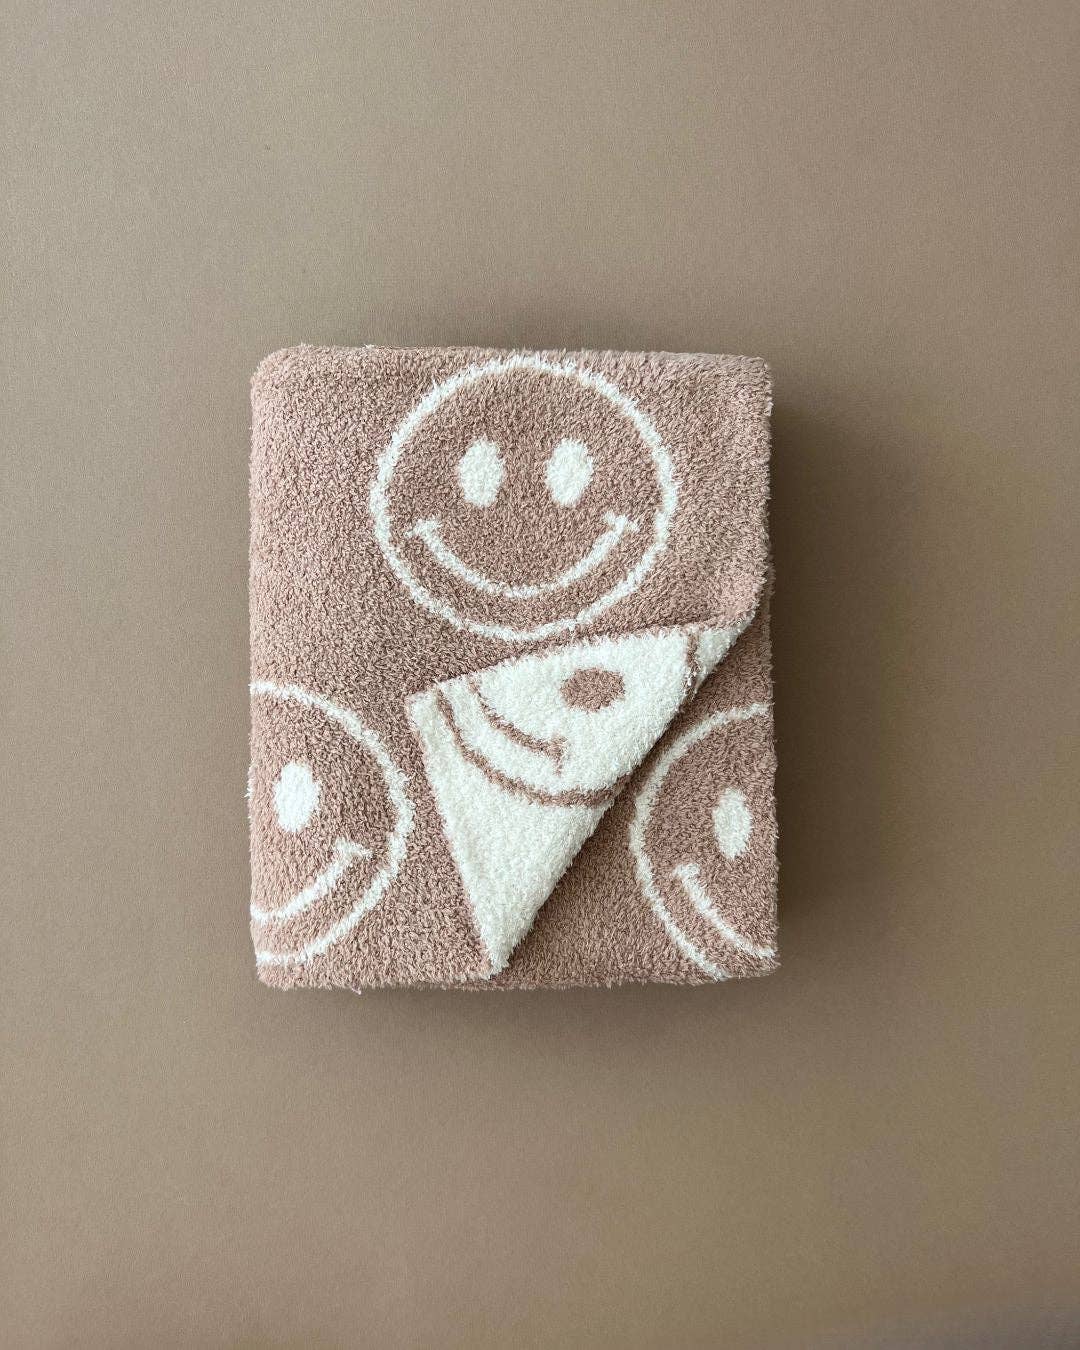 Ultra Plush Blanket || Smiley Latte